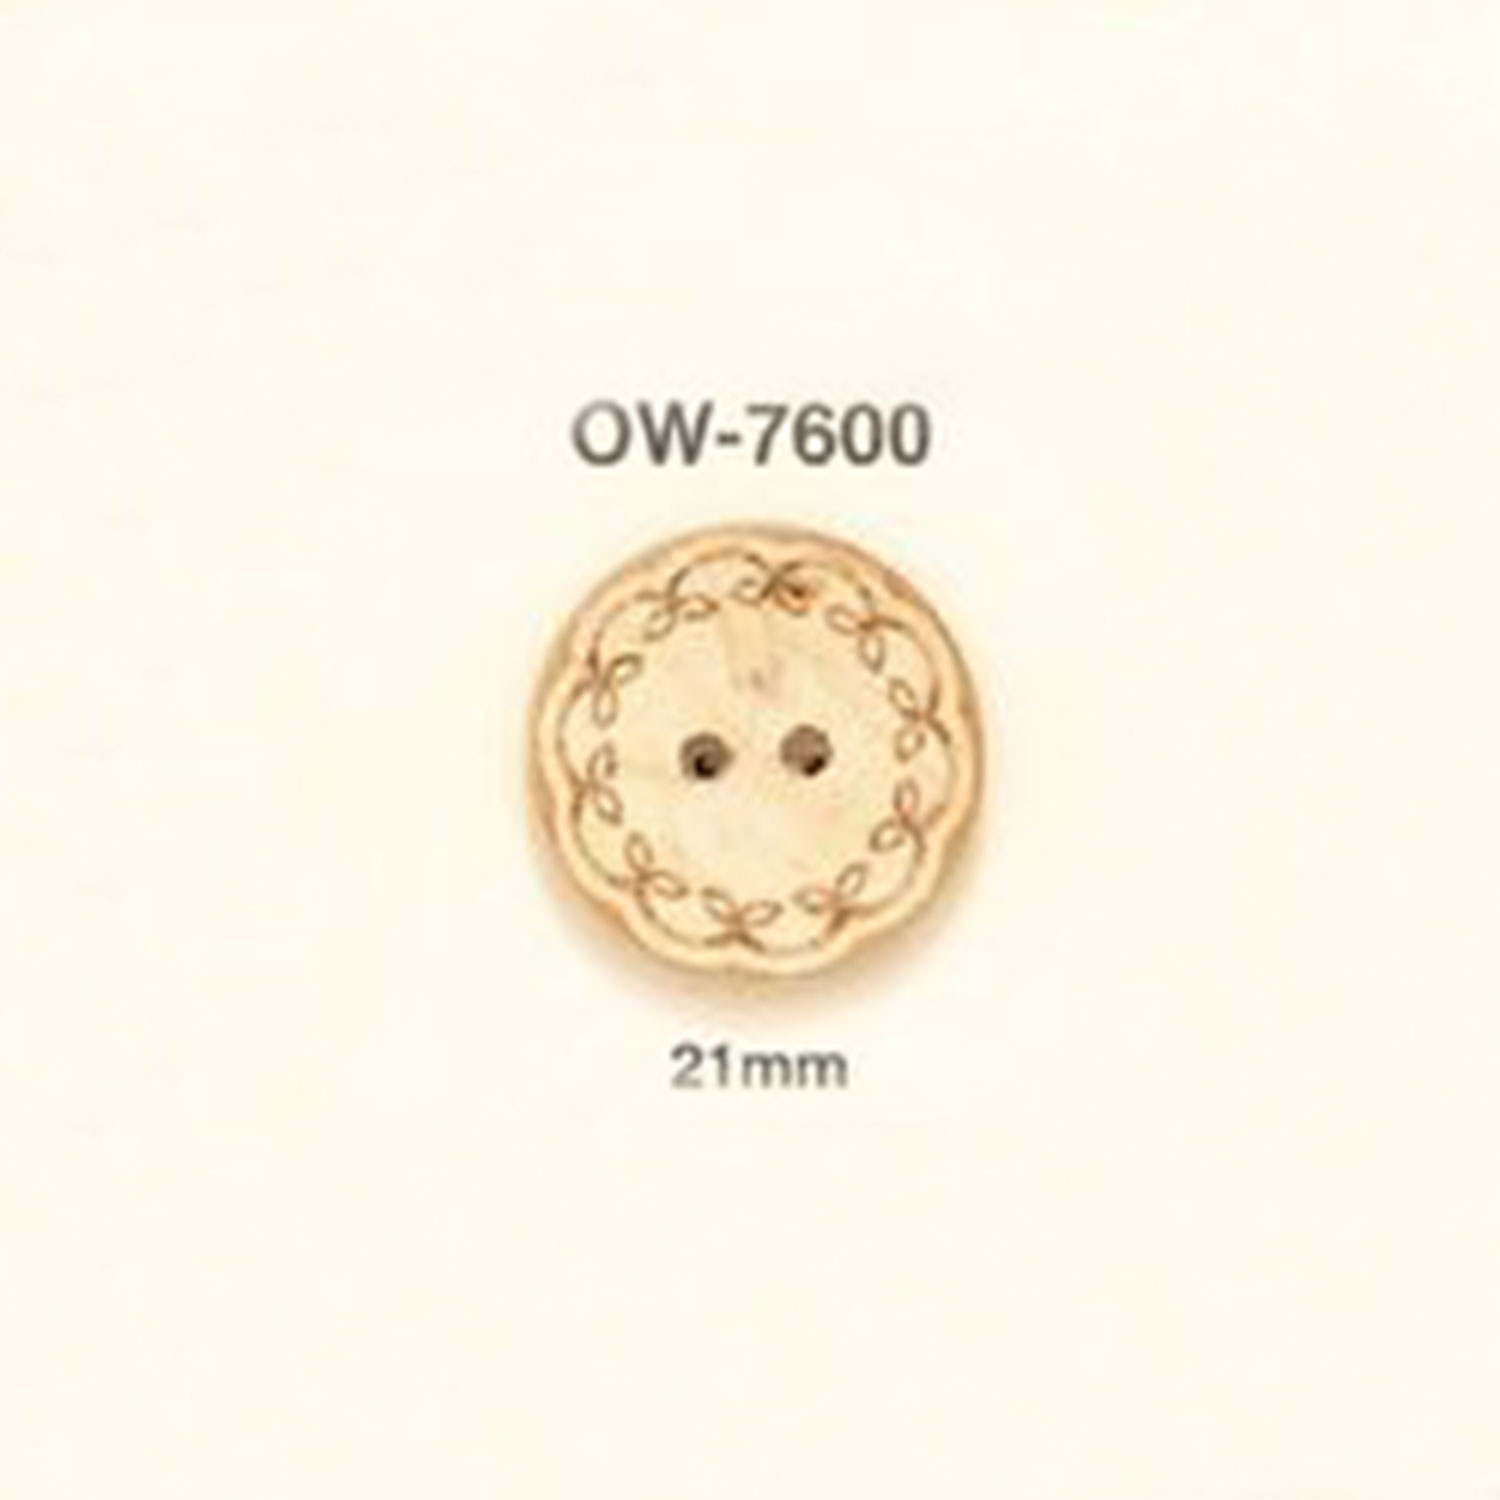 OW-7600 花卉图形元素木制纽扣 爱丽丝纽扣